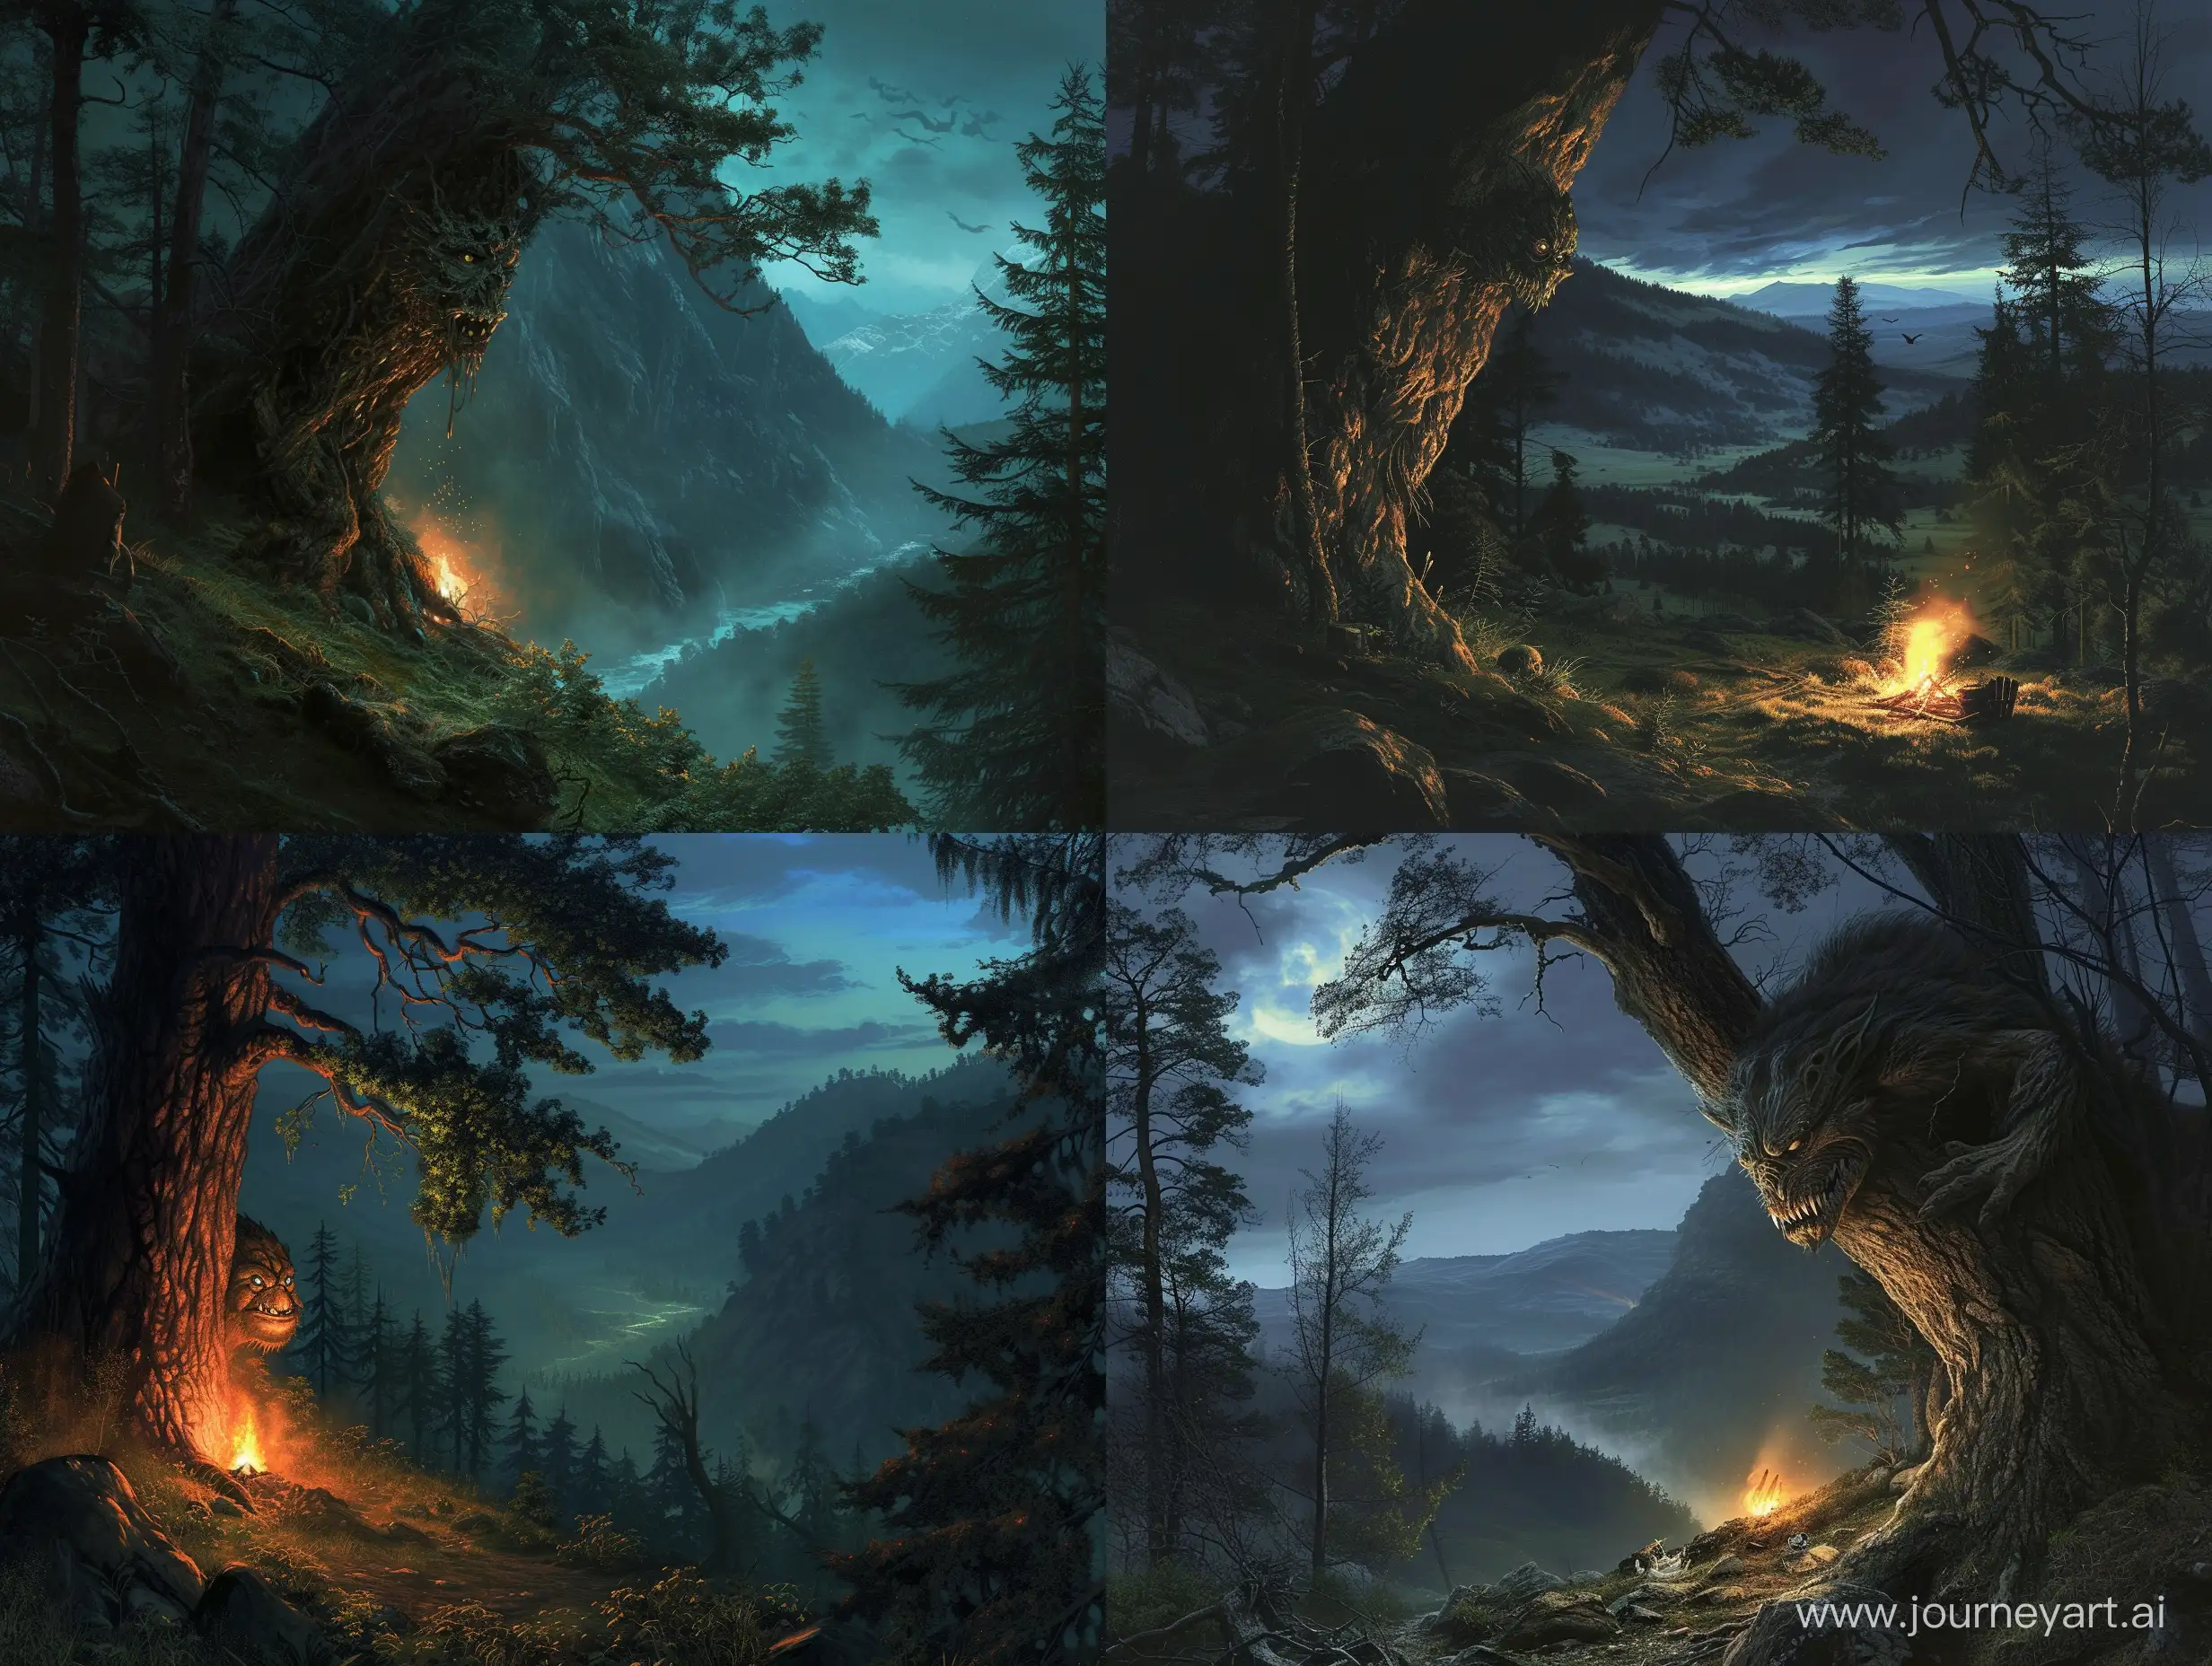 реализм, страшный монстр смотрит из-за дерева в лесу ночью в свете костра, зловещая долина

